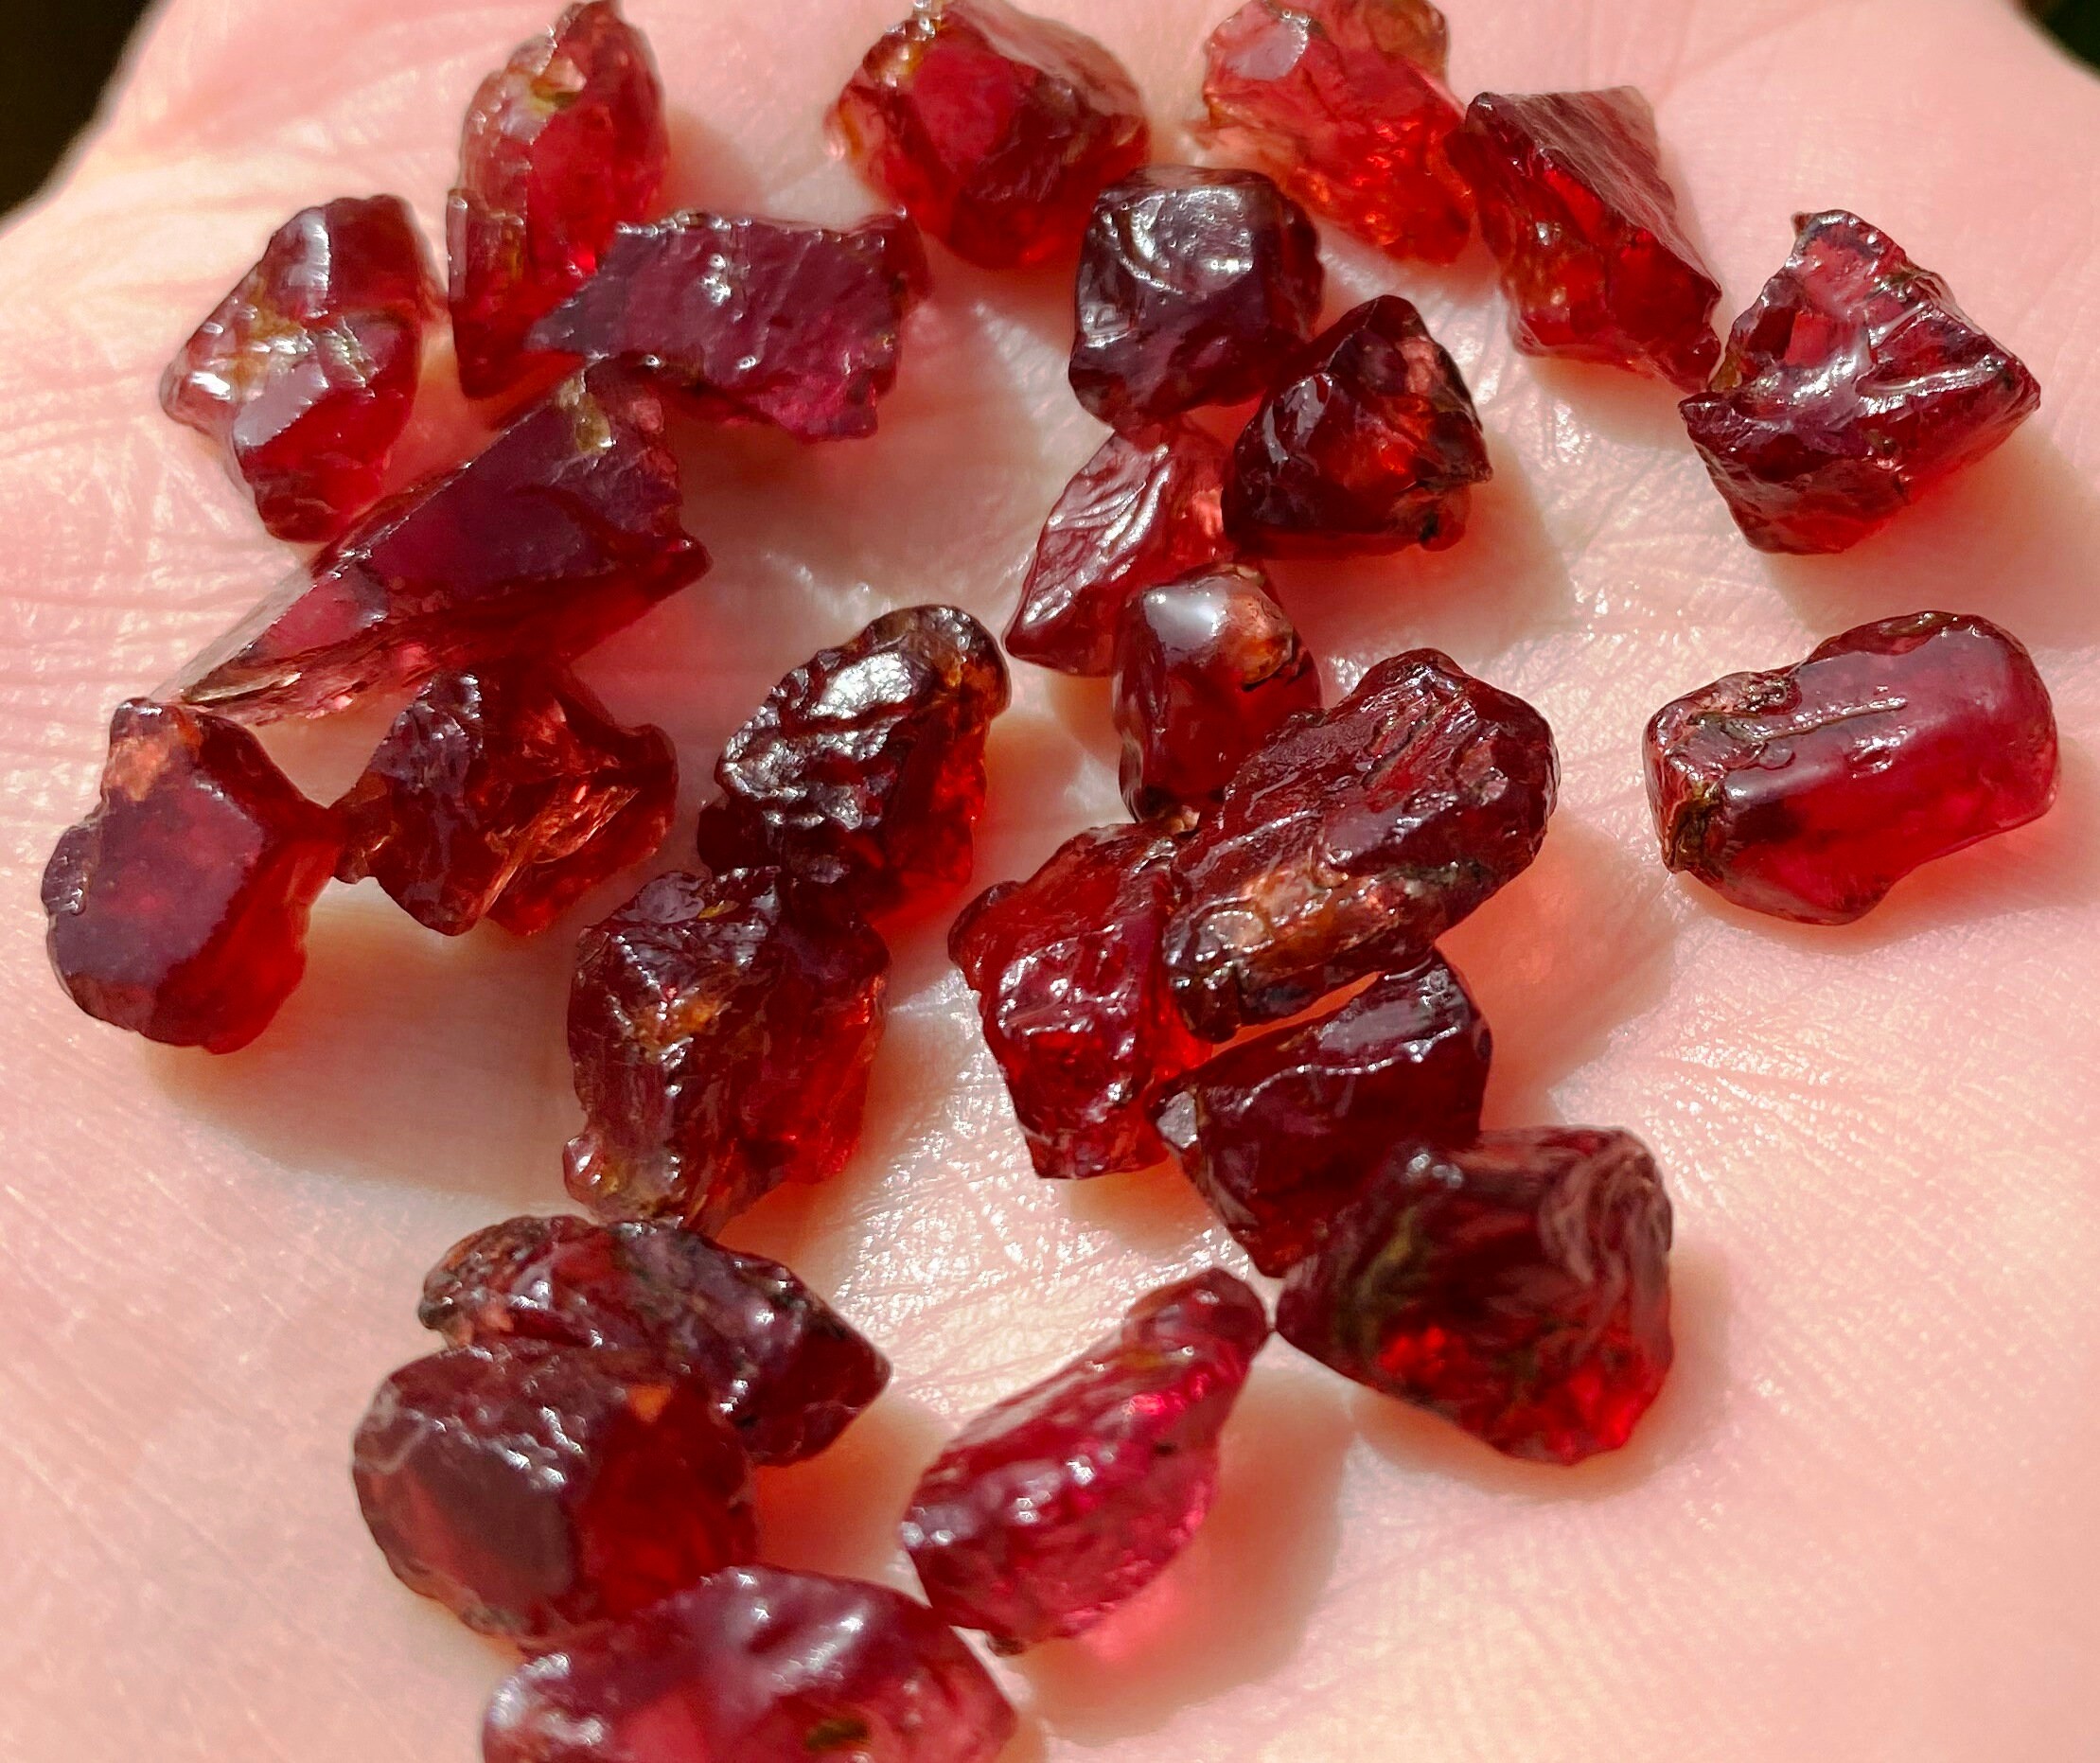 10 Piece Natural Raw Garnet Crystal, Raw Garnet Stone, Rough Gemstone,  Jewelry Making, Healing Crystal, Crystal Shop 